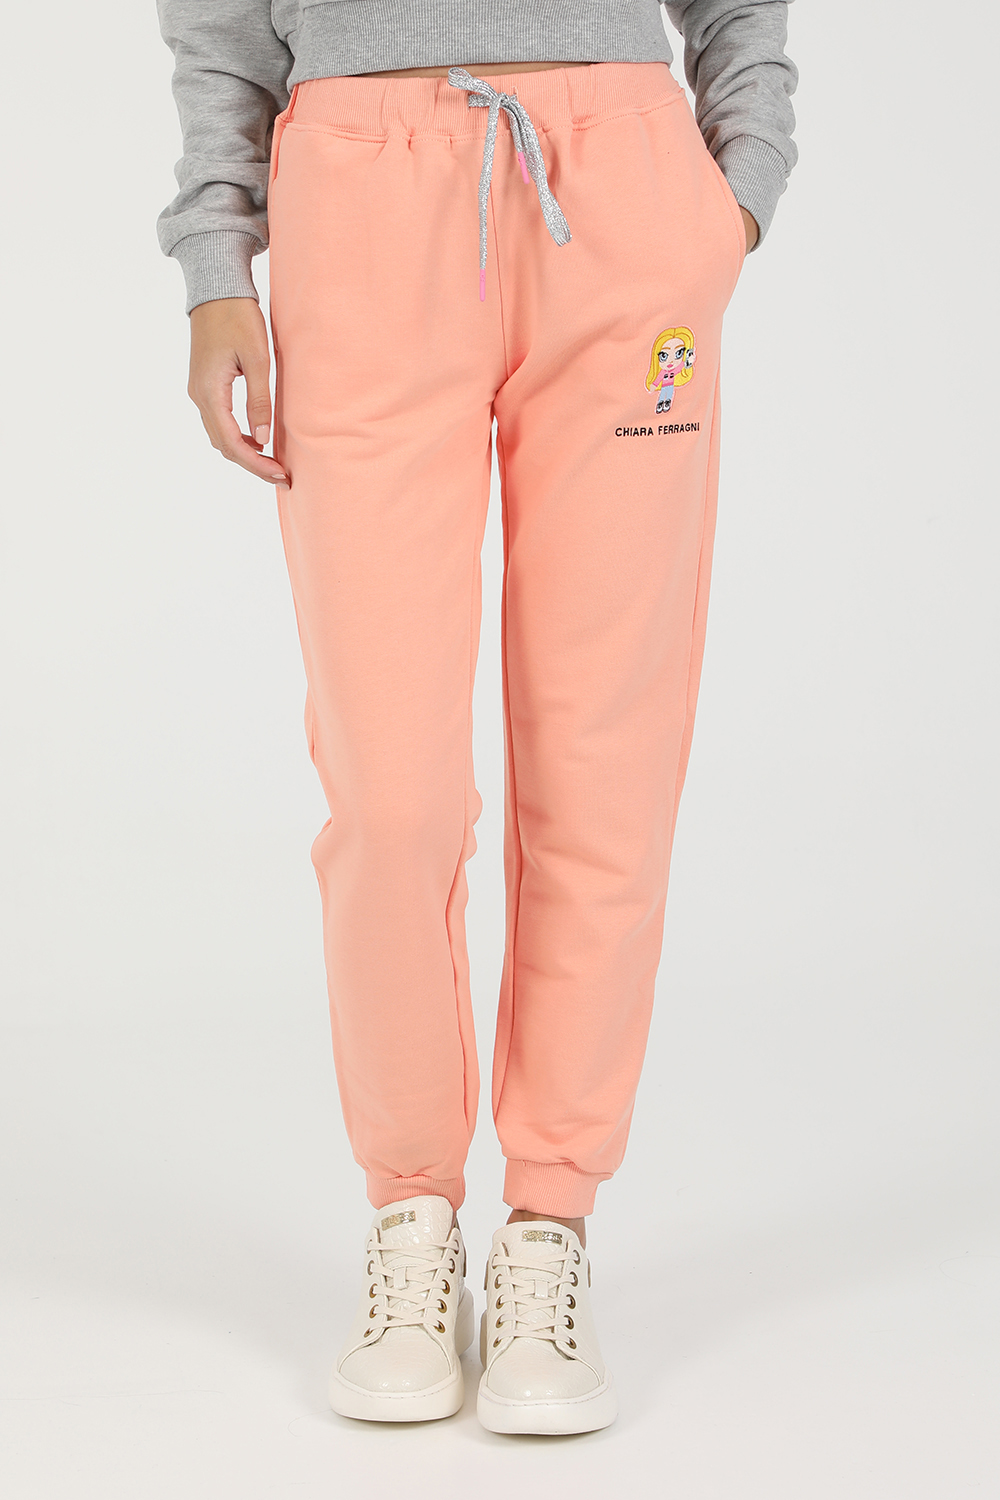 CHIARRA FERRAGNI – Γυναικειο παντελονι φορμας CHIARRA FERRAGNI MASCOTTE PANT ροζ